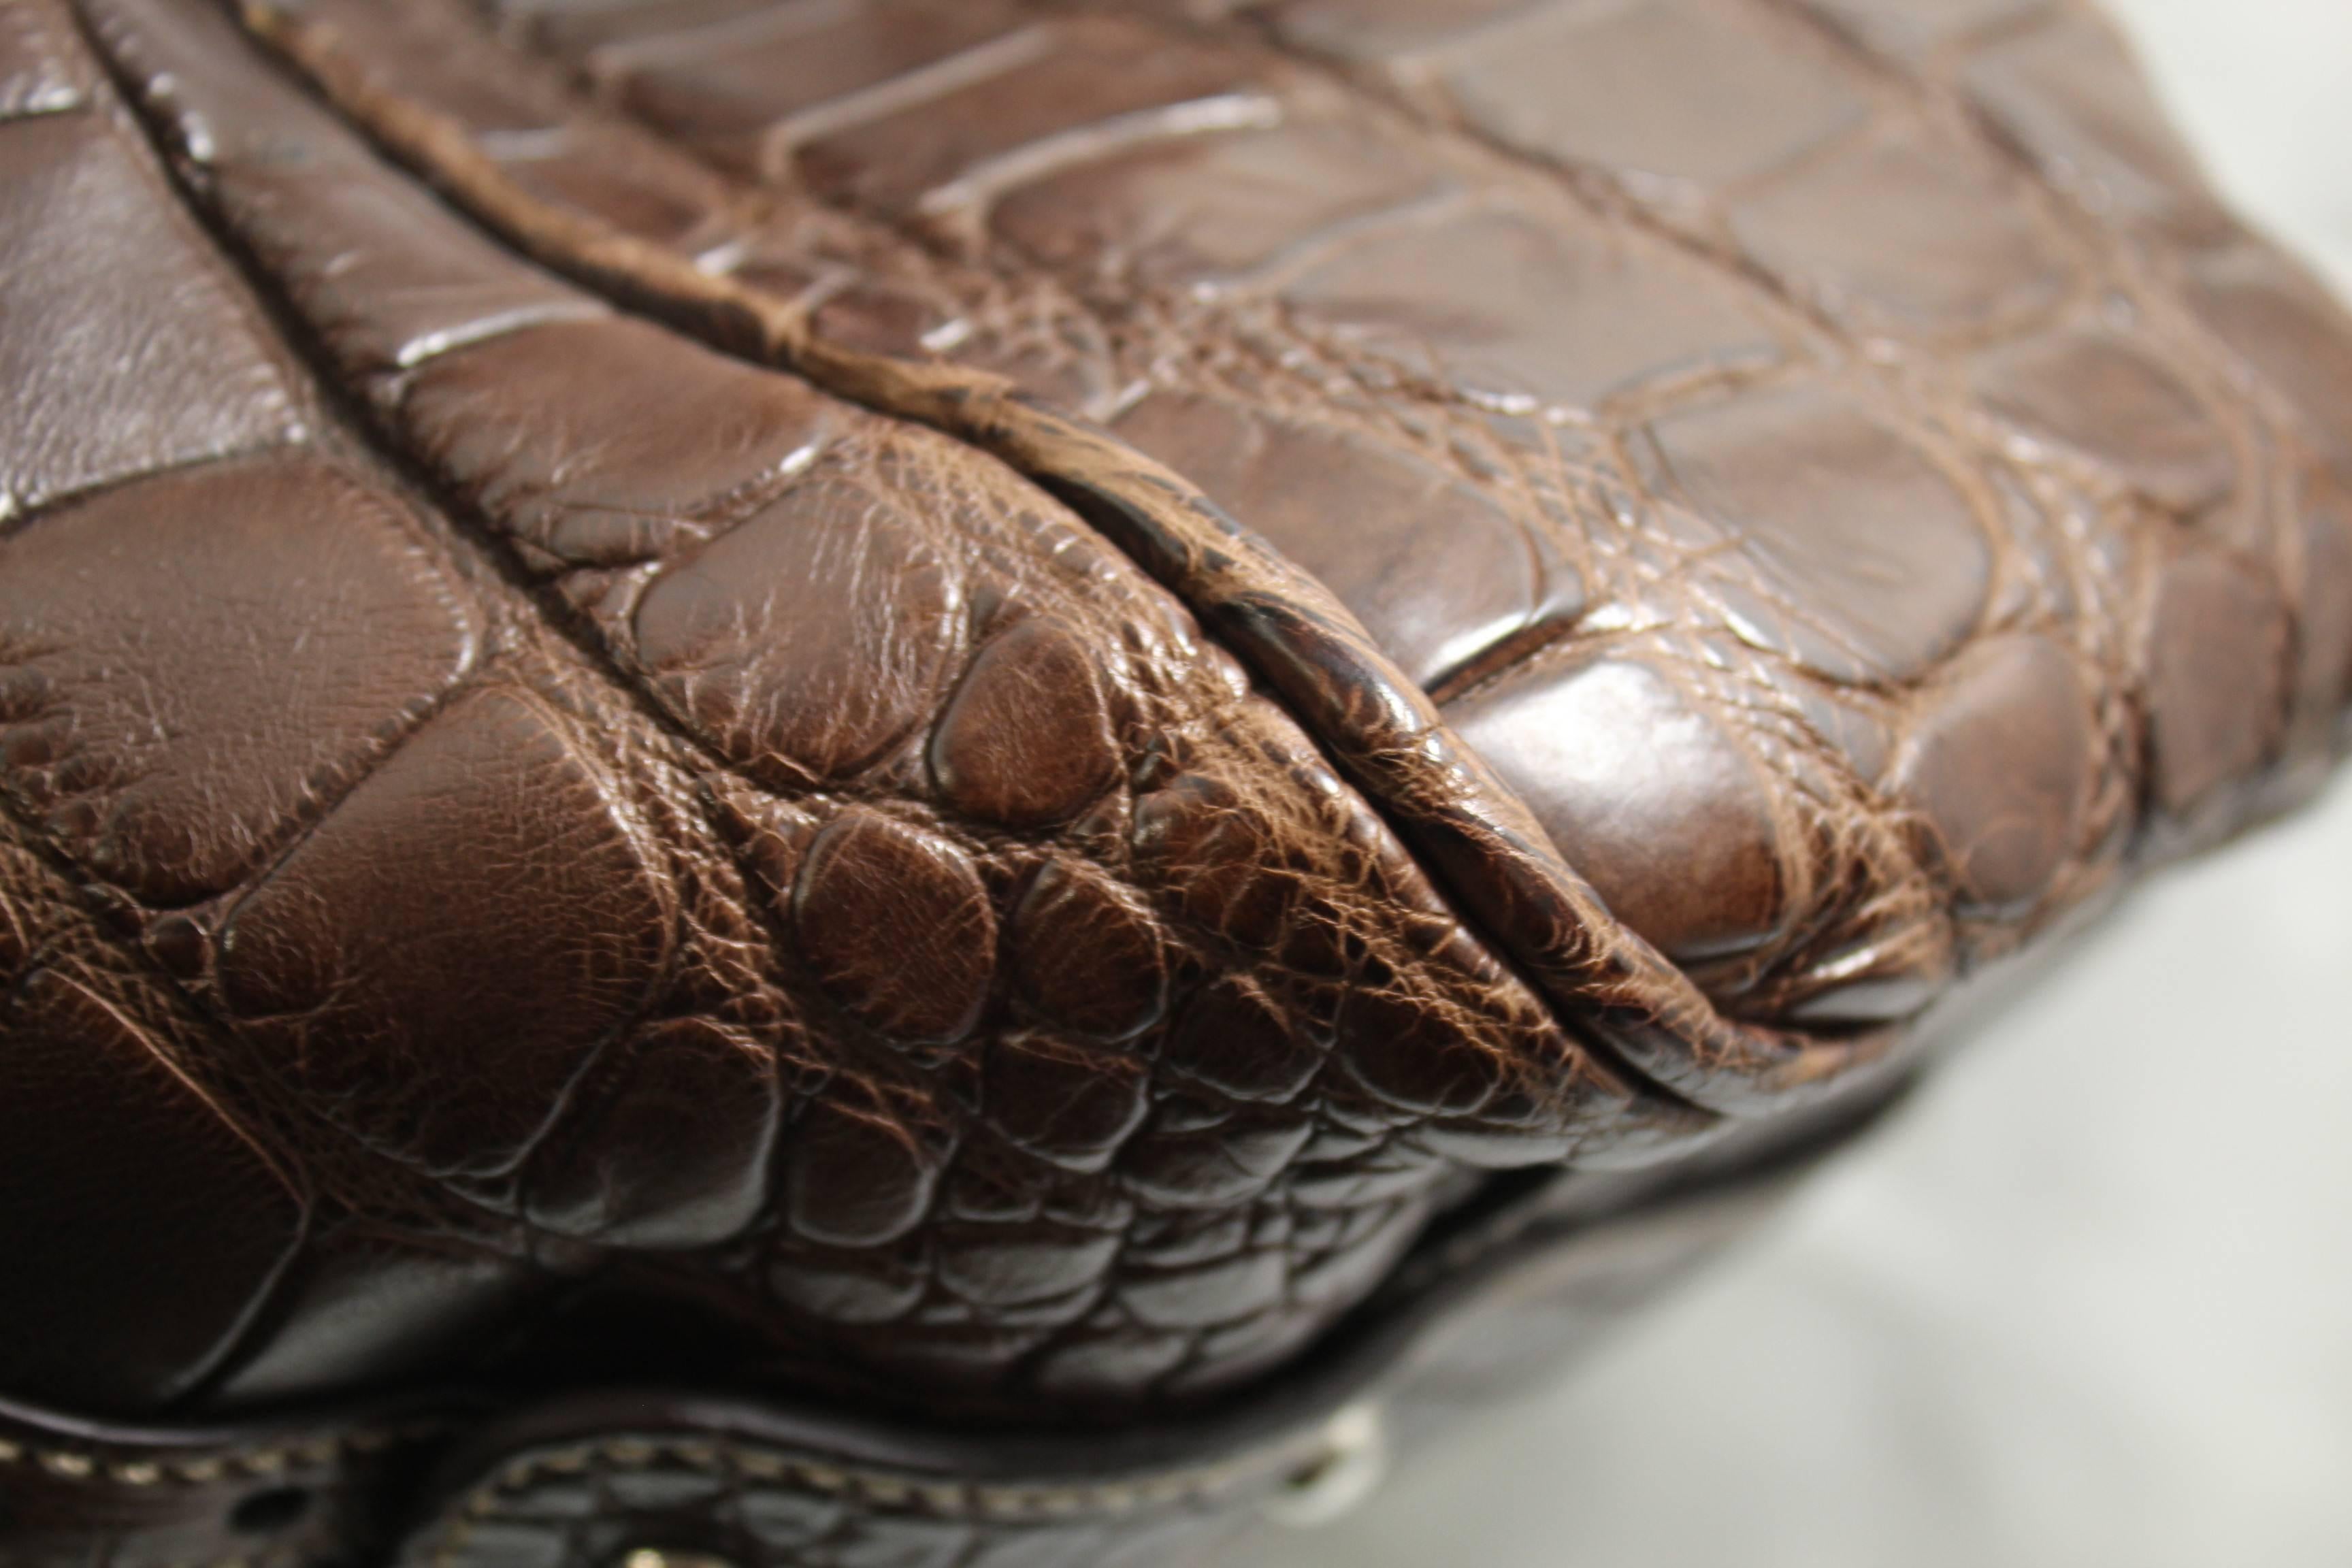 Black New 2007 Gucci Men's Cocco Nappato crocodile Travel Bag with Detachable Strap